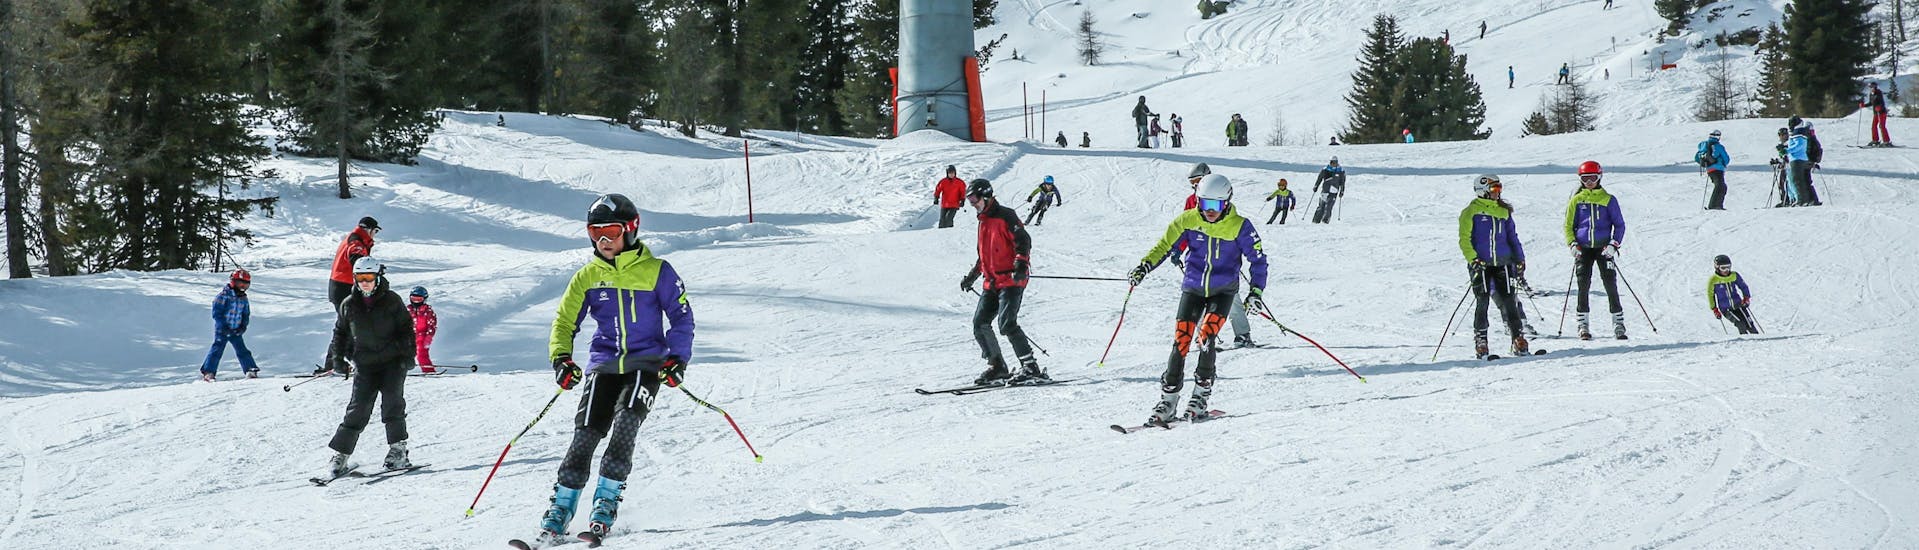 Ausblick auf die sonnige Berglandschaft beim Skifahren lernen mit den Skischulen in Kreischberg-Murau.